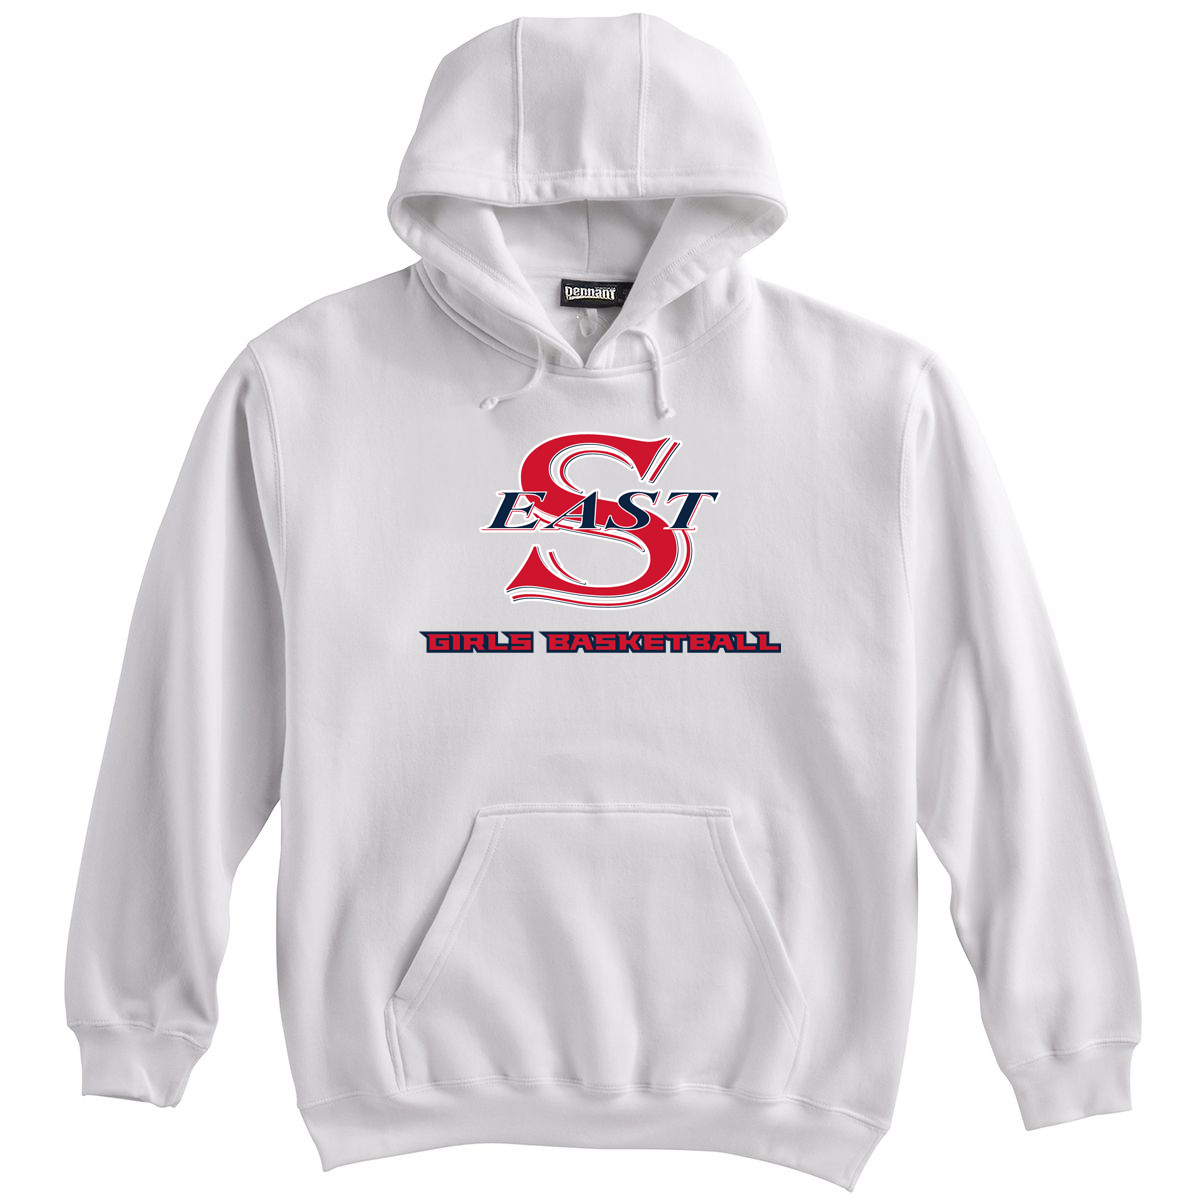 Smithtown East Girls Basketball Sweatshirt